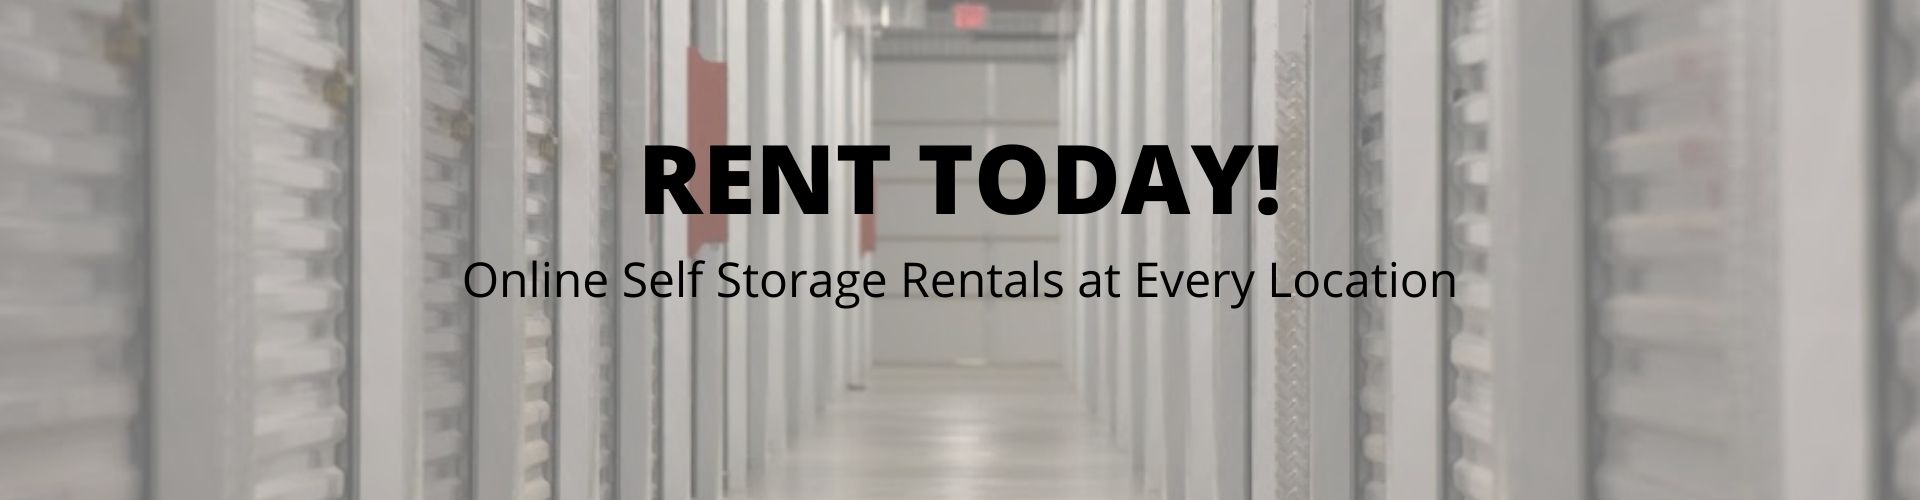 online storage rentals at King's 625 Storage